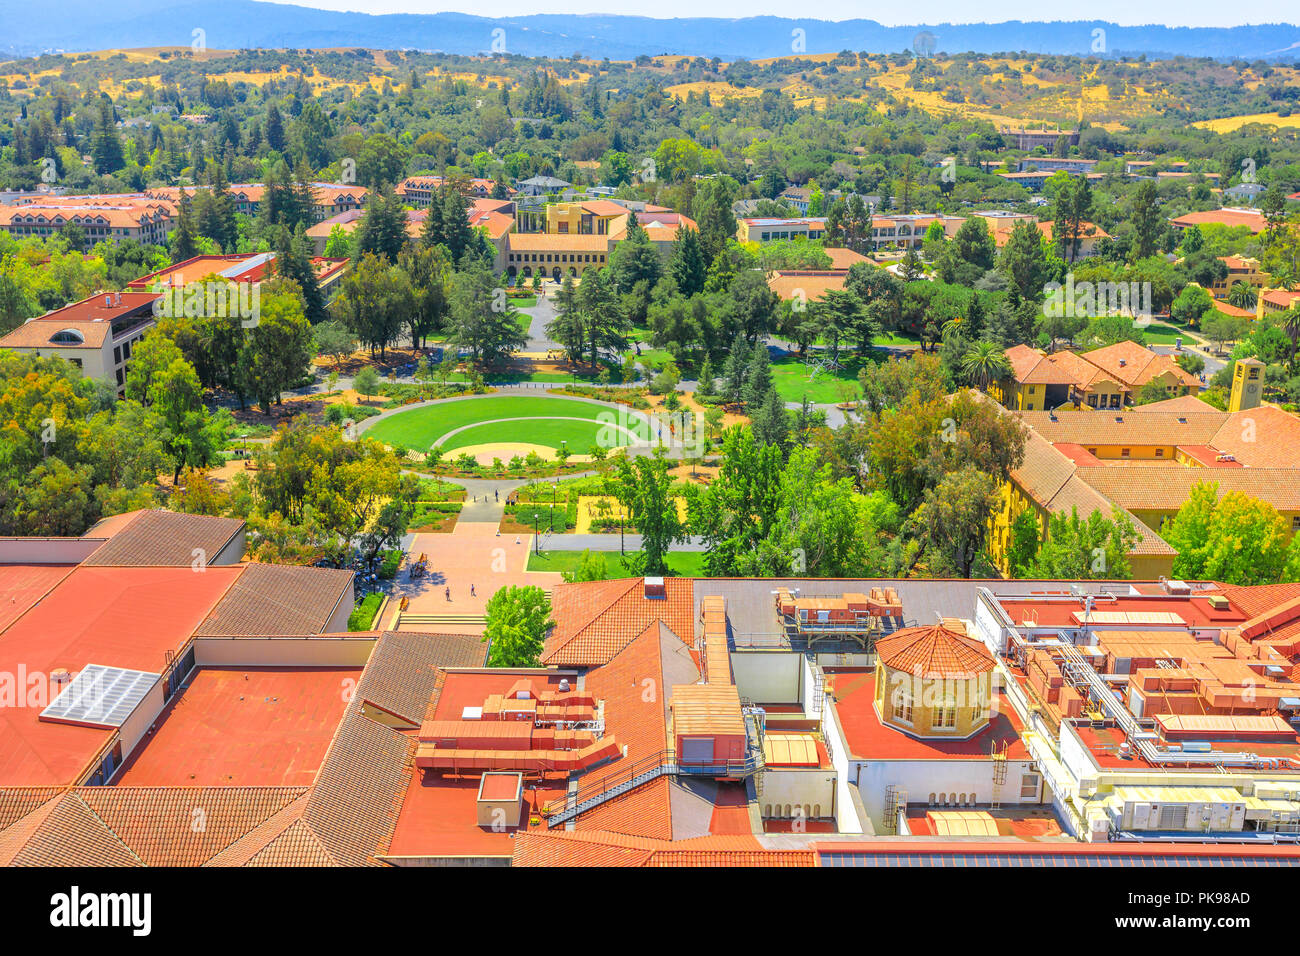 Palo Alto, Californie, États-Unis - 13 août 2018 : Vue aérienne du Campus de l'Université de Stanford vu de Hoover Tower Observatory. Stanford est l'une des plus prestigieuses universités du monde. Banque D'Images